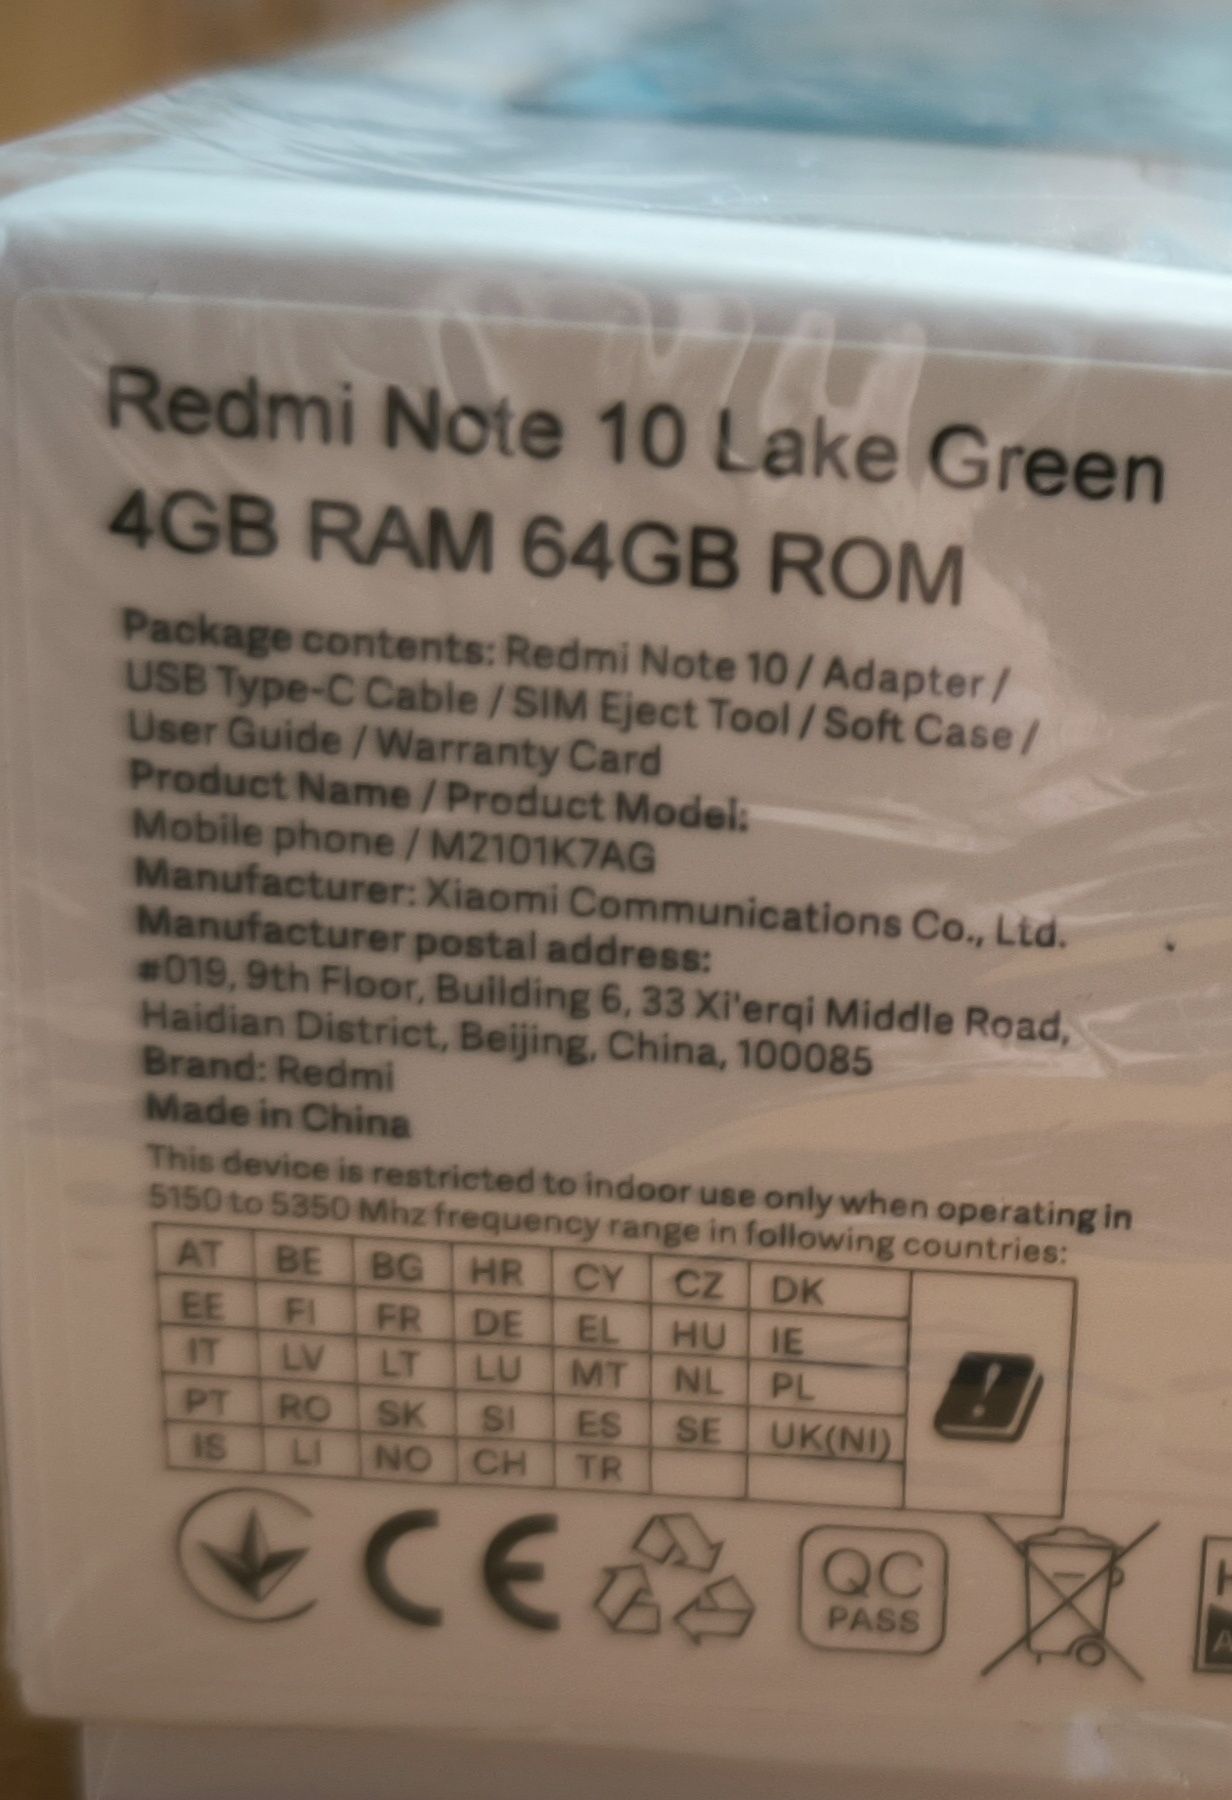 Redmi Not 10 4GB RAM 64GB ROM